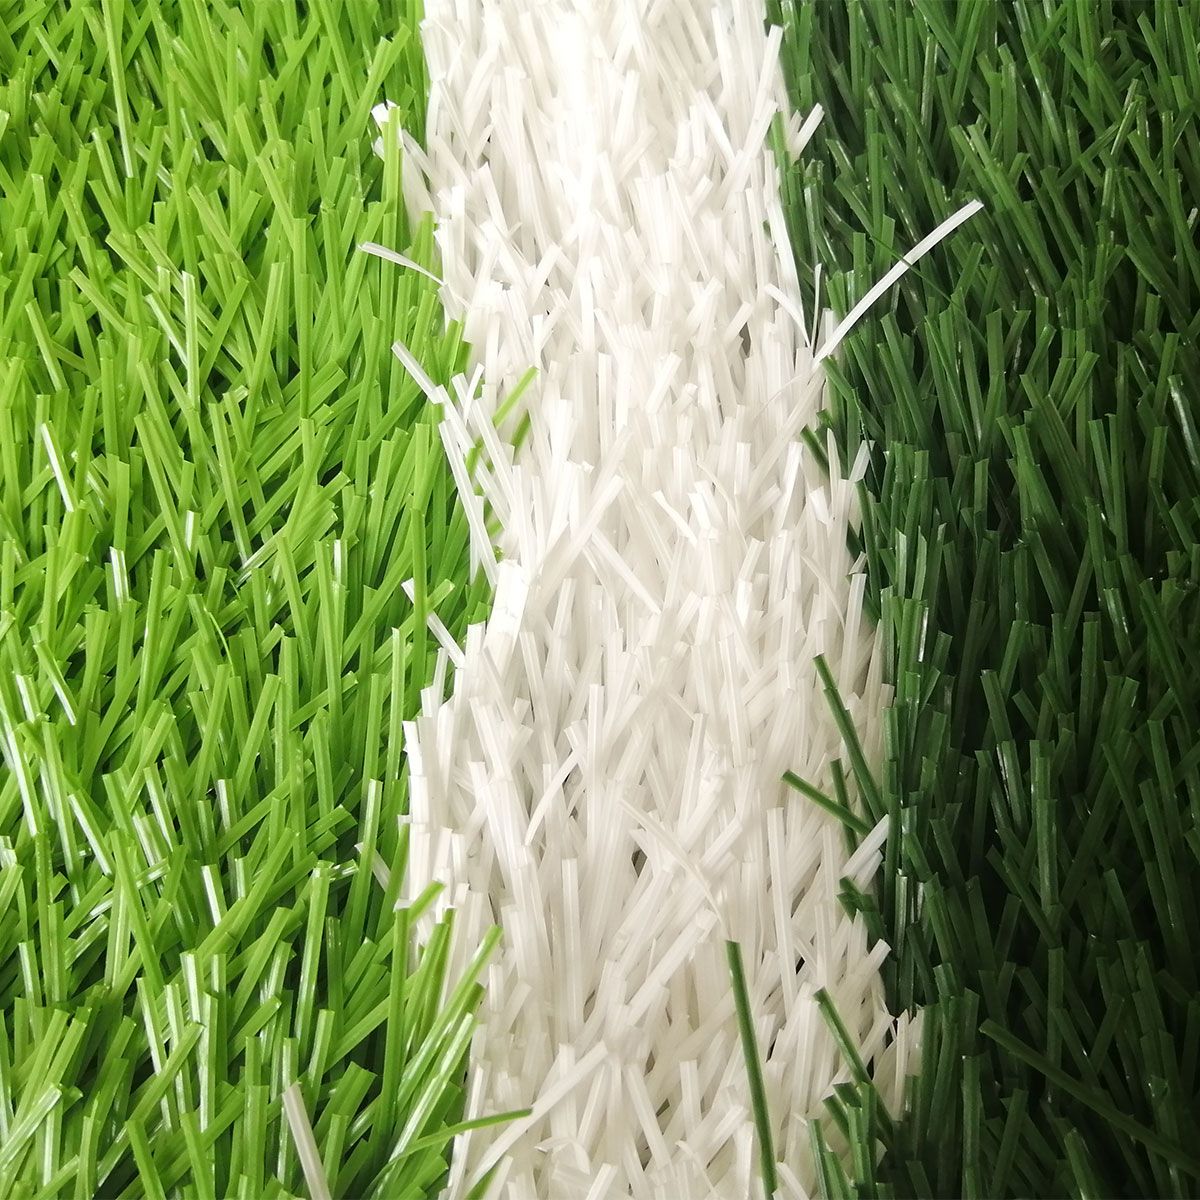 Futbol futbol maydoni uchun yuqori aşınmaya bardoshli sintetik çim sun'iy o'tlarni ulgurji ishlab chiqarish